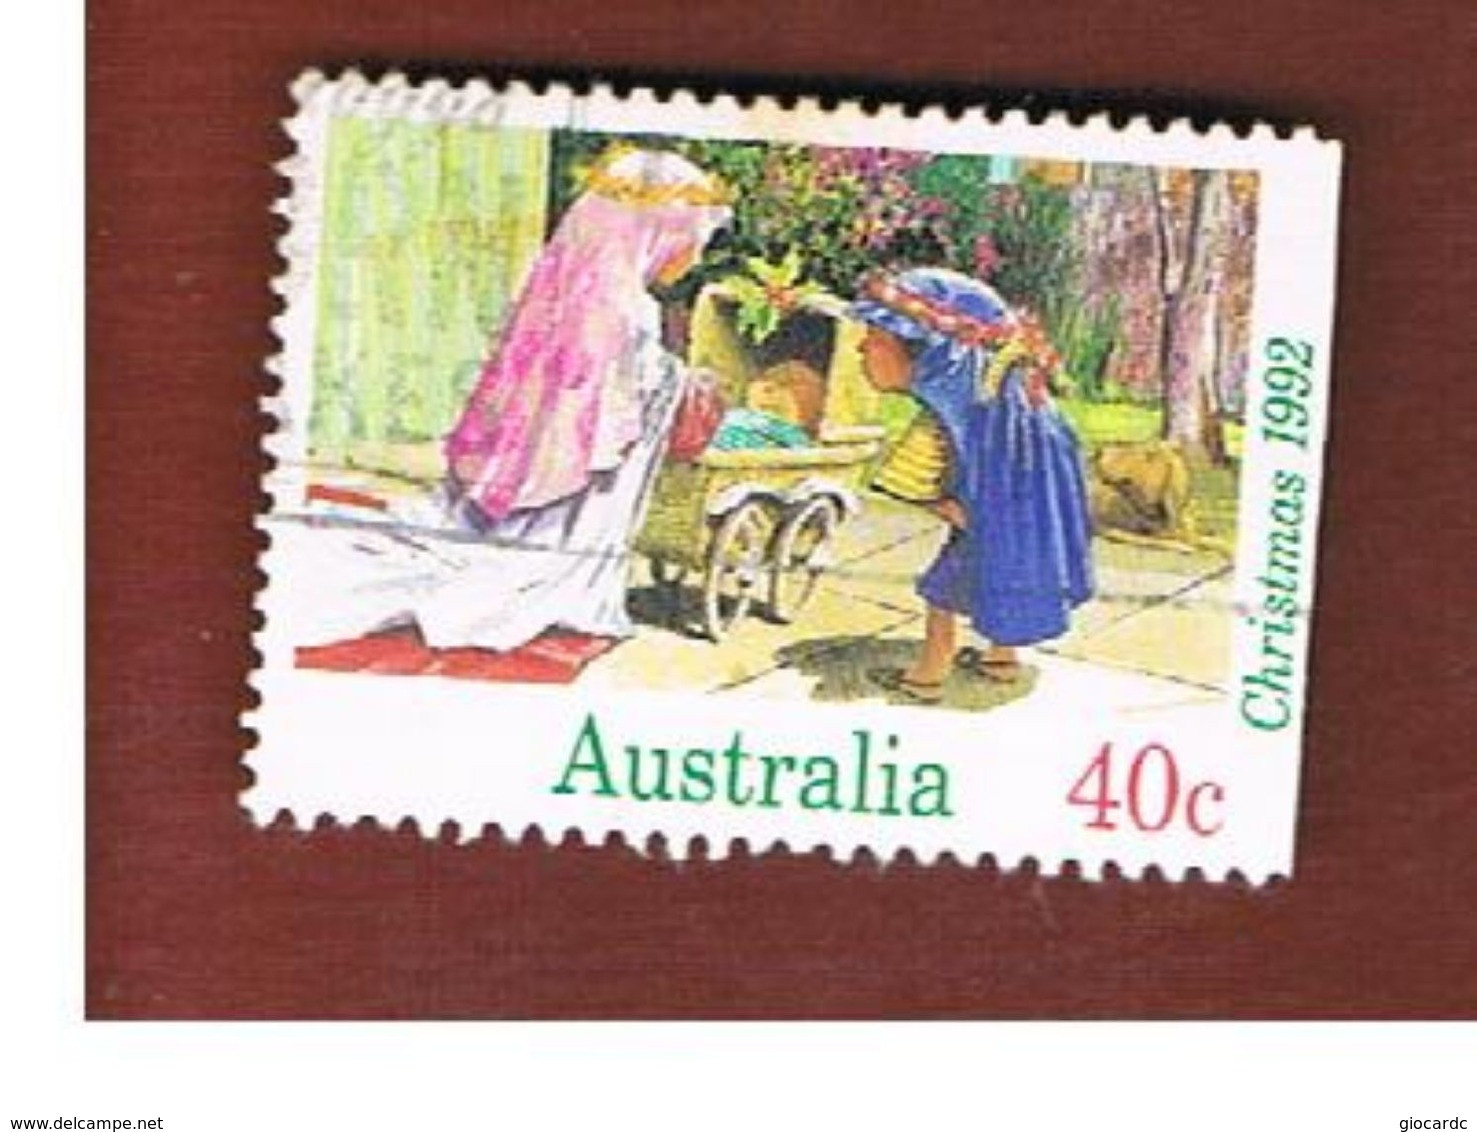 AUSTRALIA  -  SG 1383  -      1992  CHRISTMAS      -       USED - Oblitérés